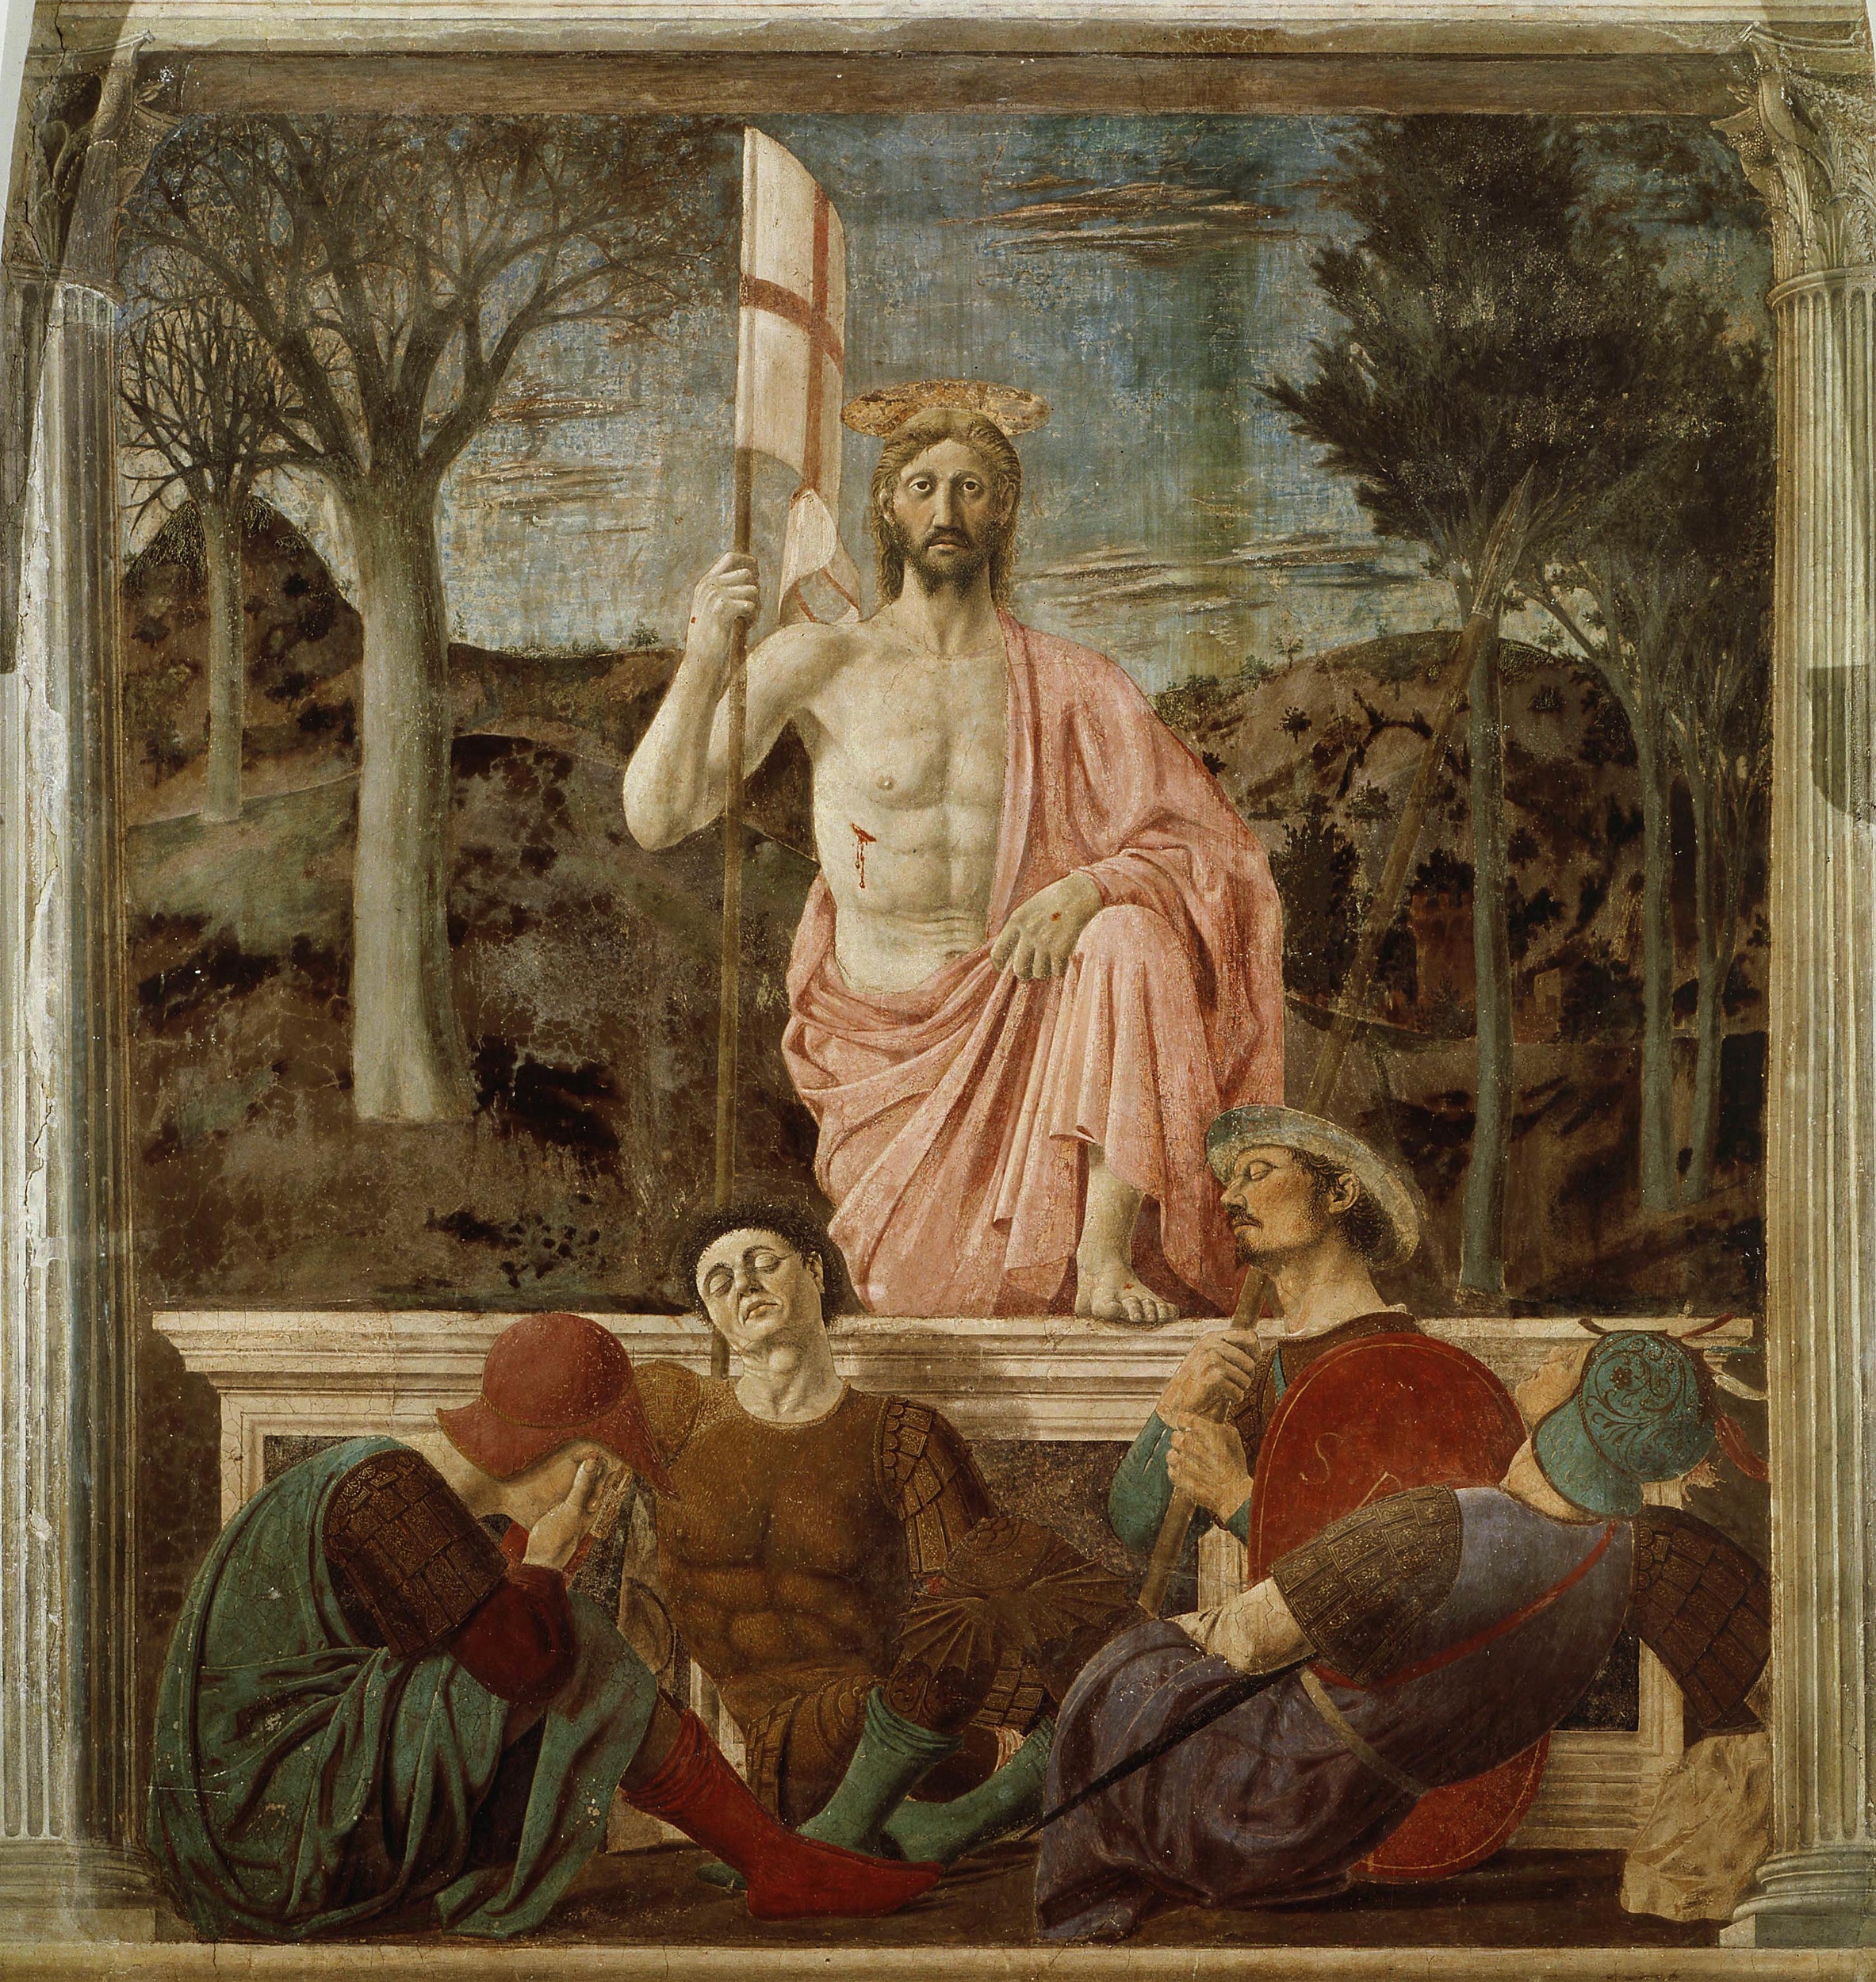 Învierea  by Piero della Francesca - 1465 - 89 in × 79 in 